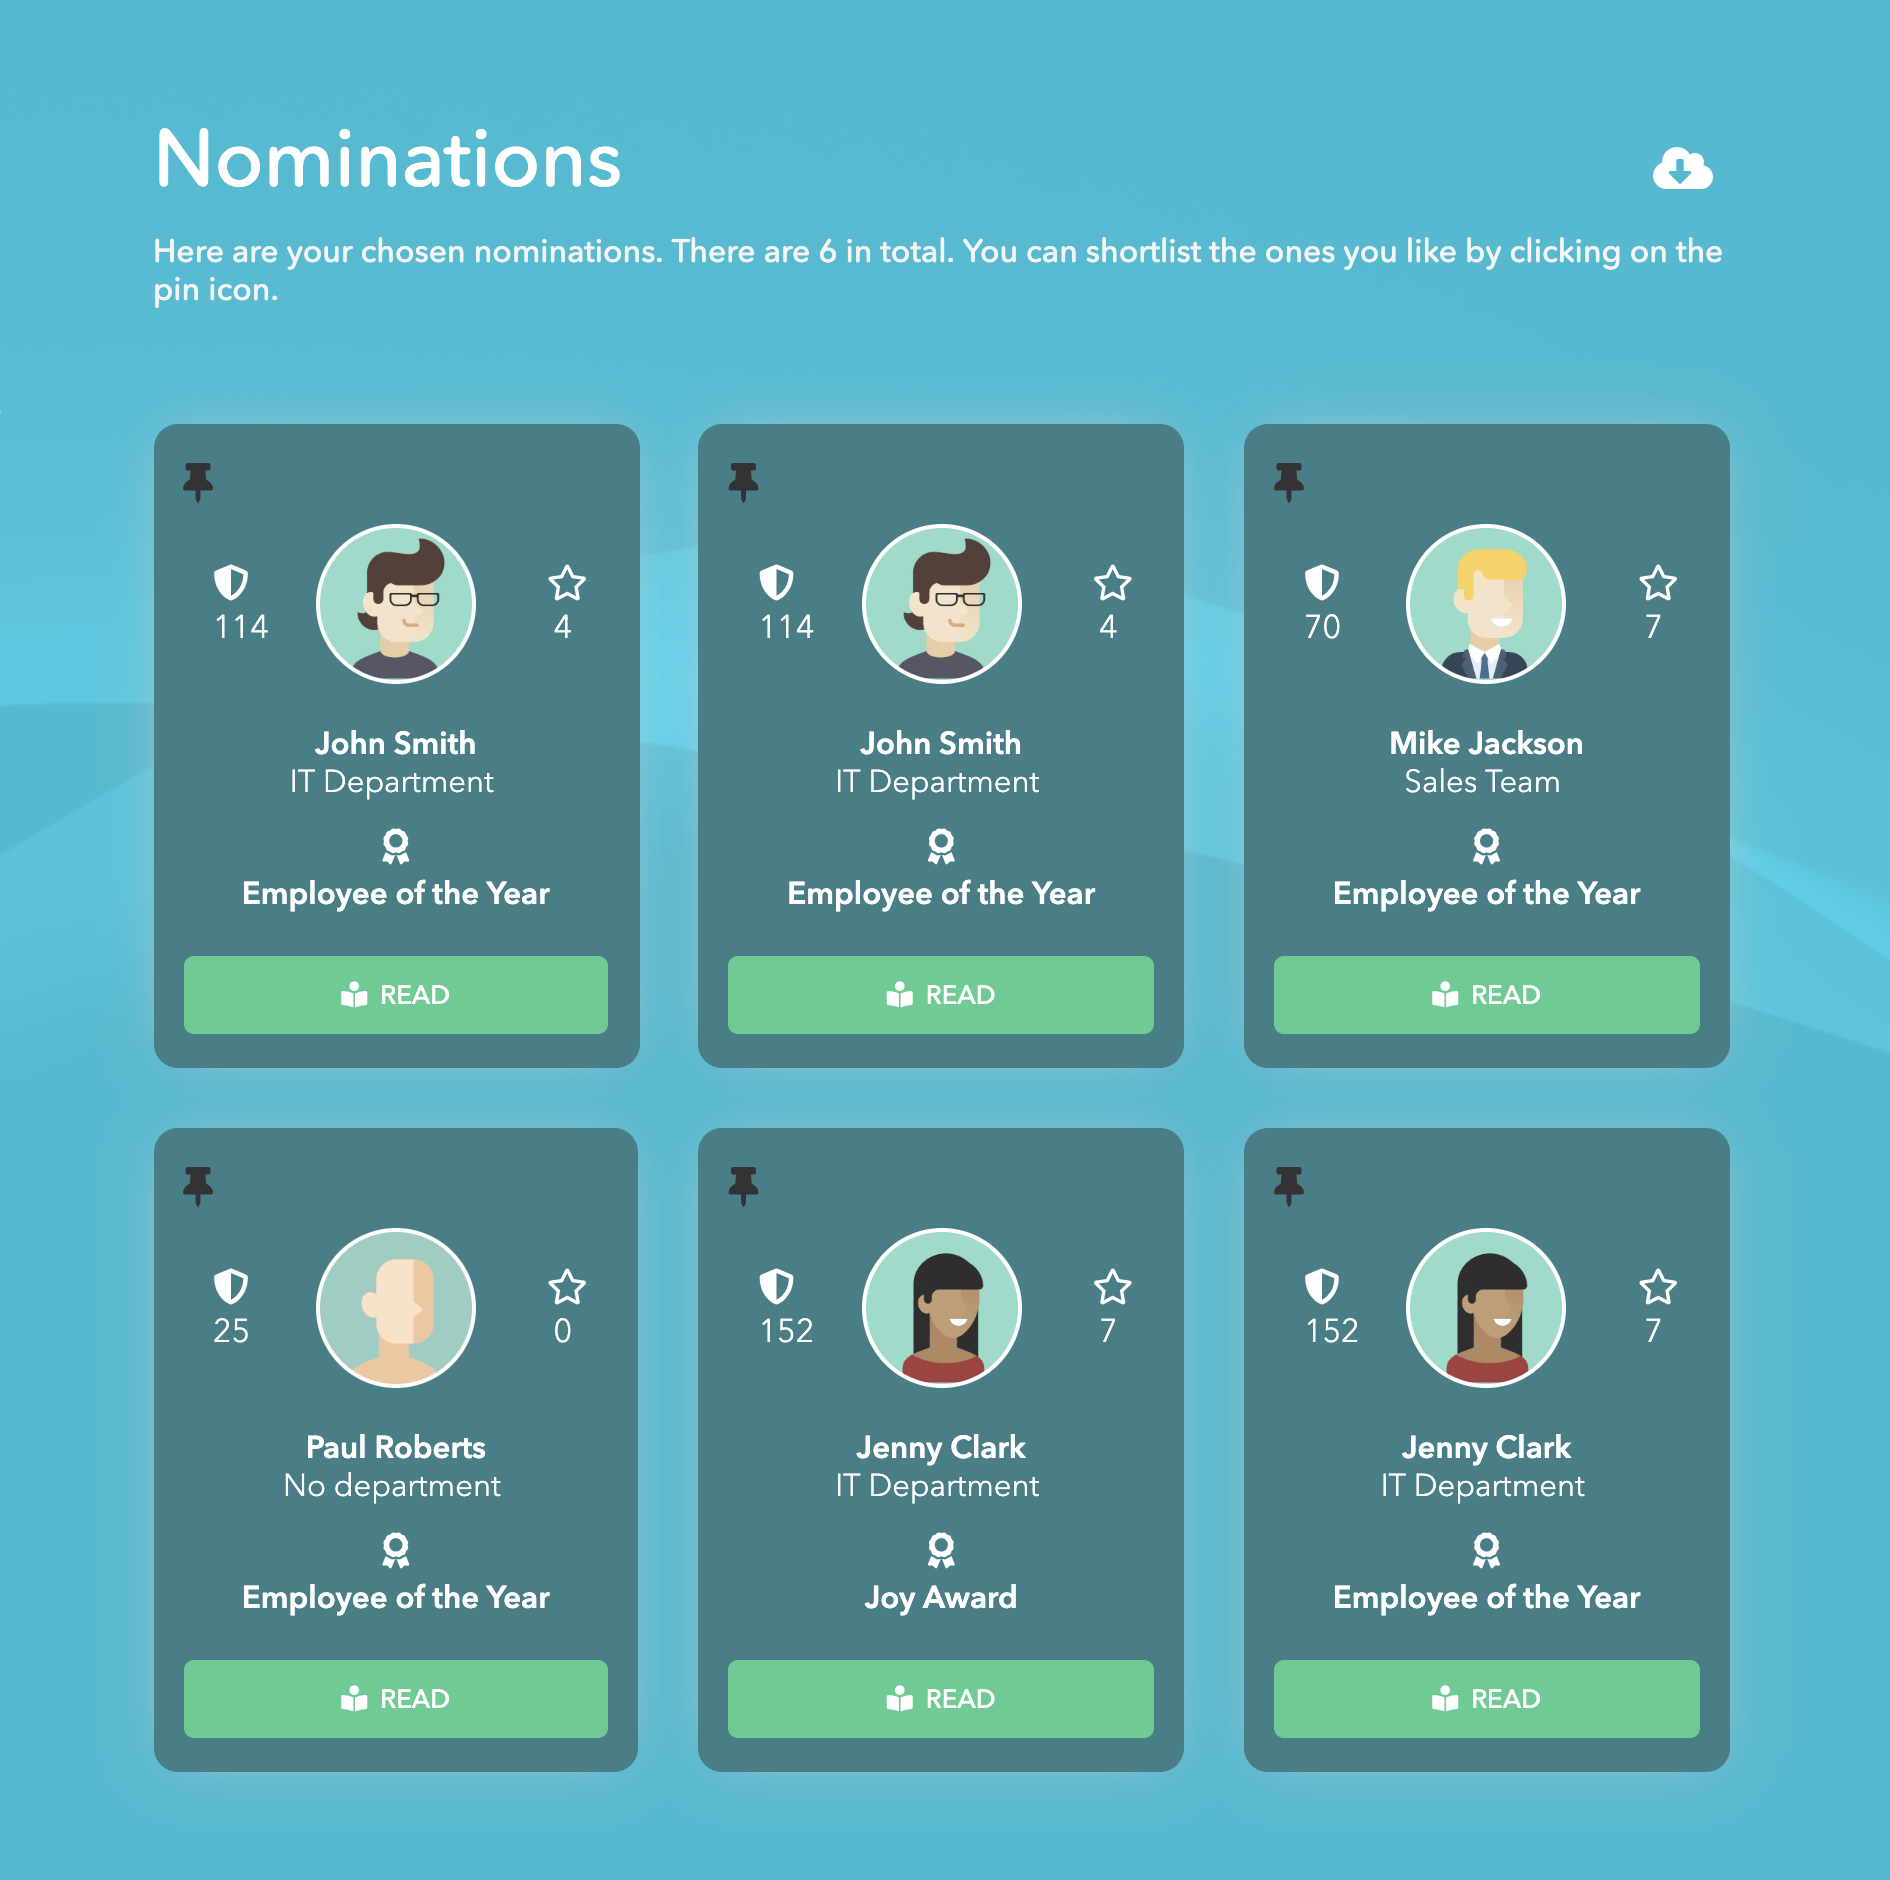 Nominations_-_All_-_Closeup.png